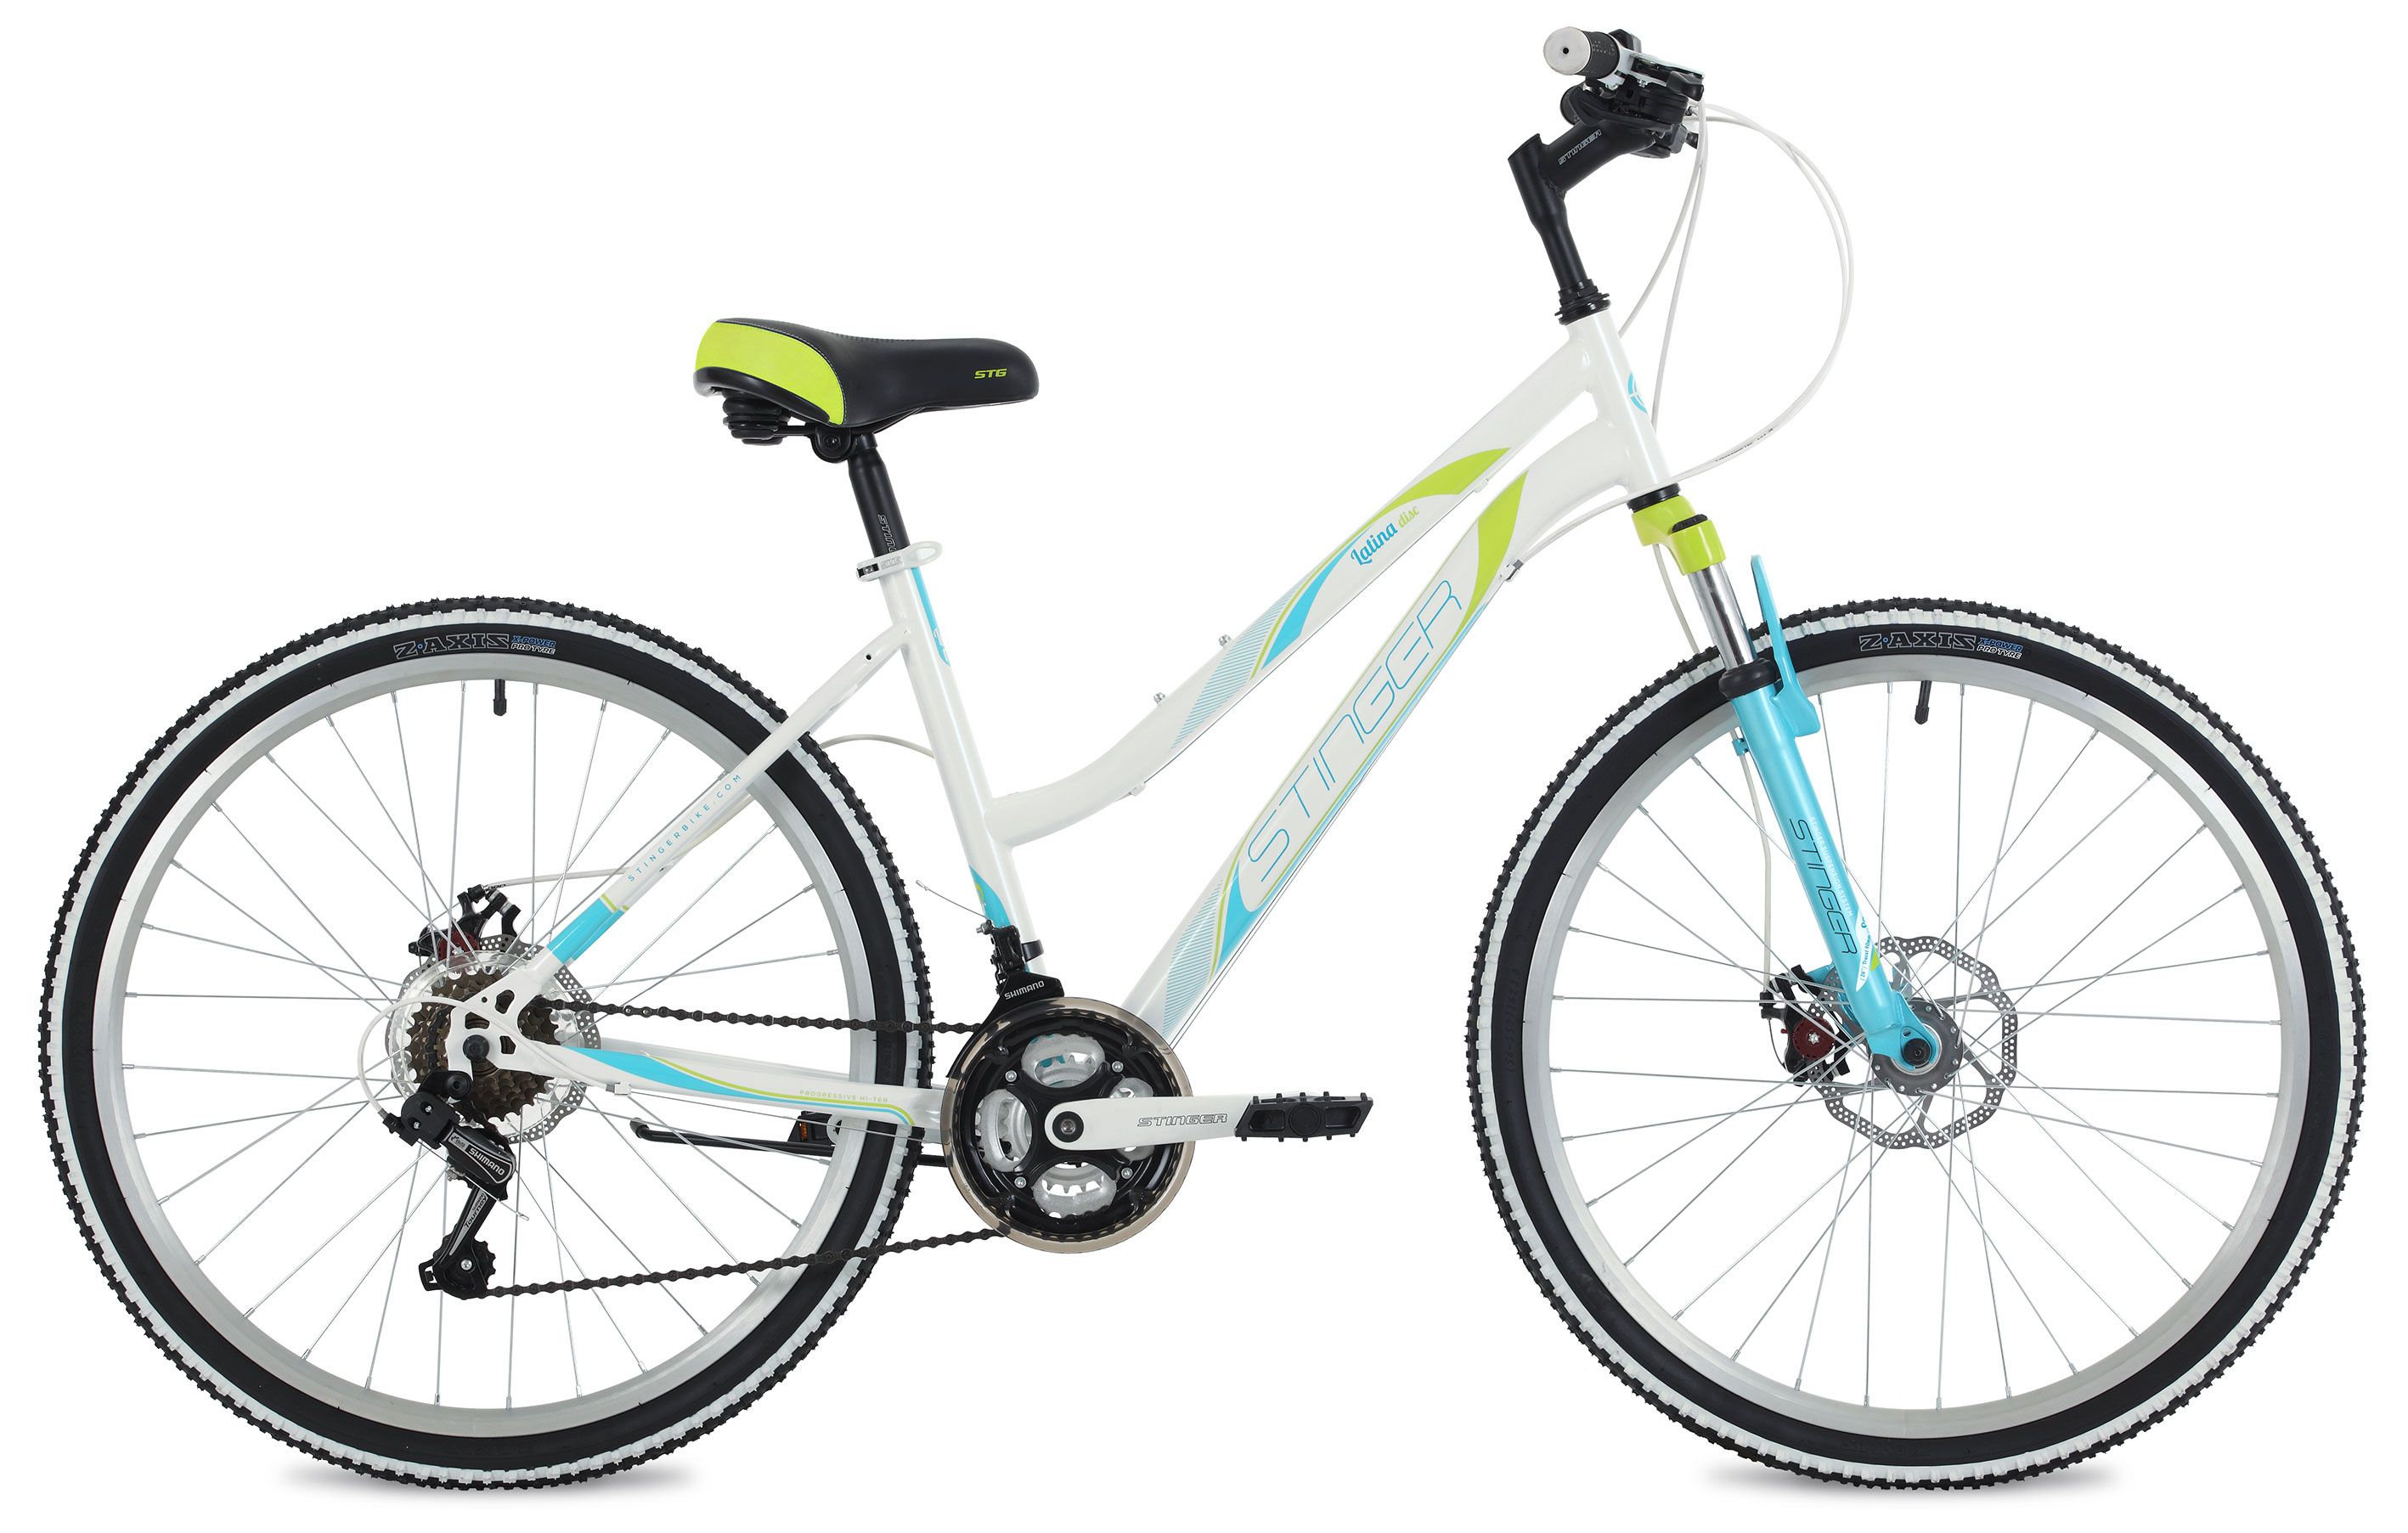  Отзывы о Женском велосипеде Stinger Latina D 26 2020